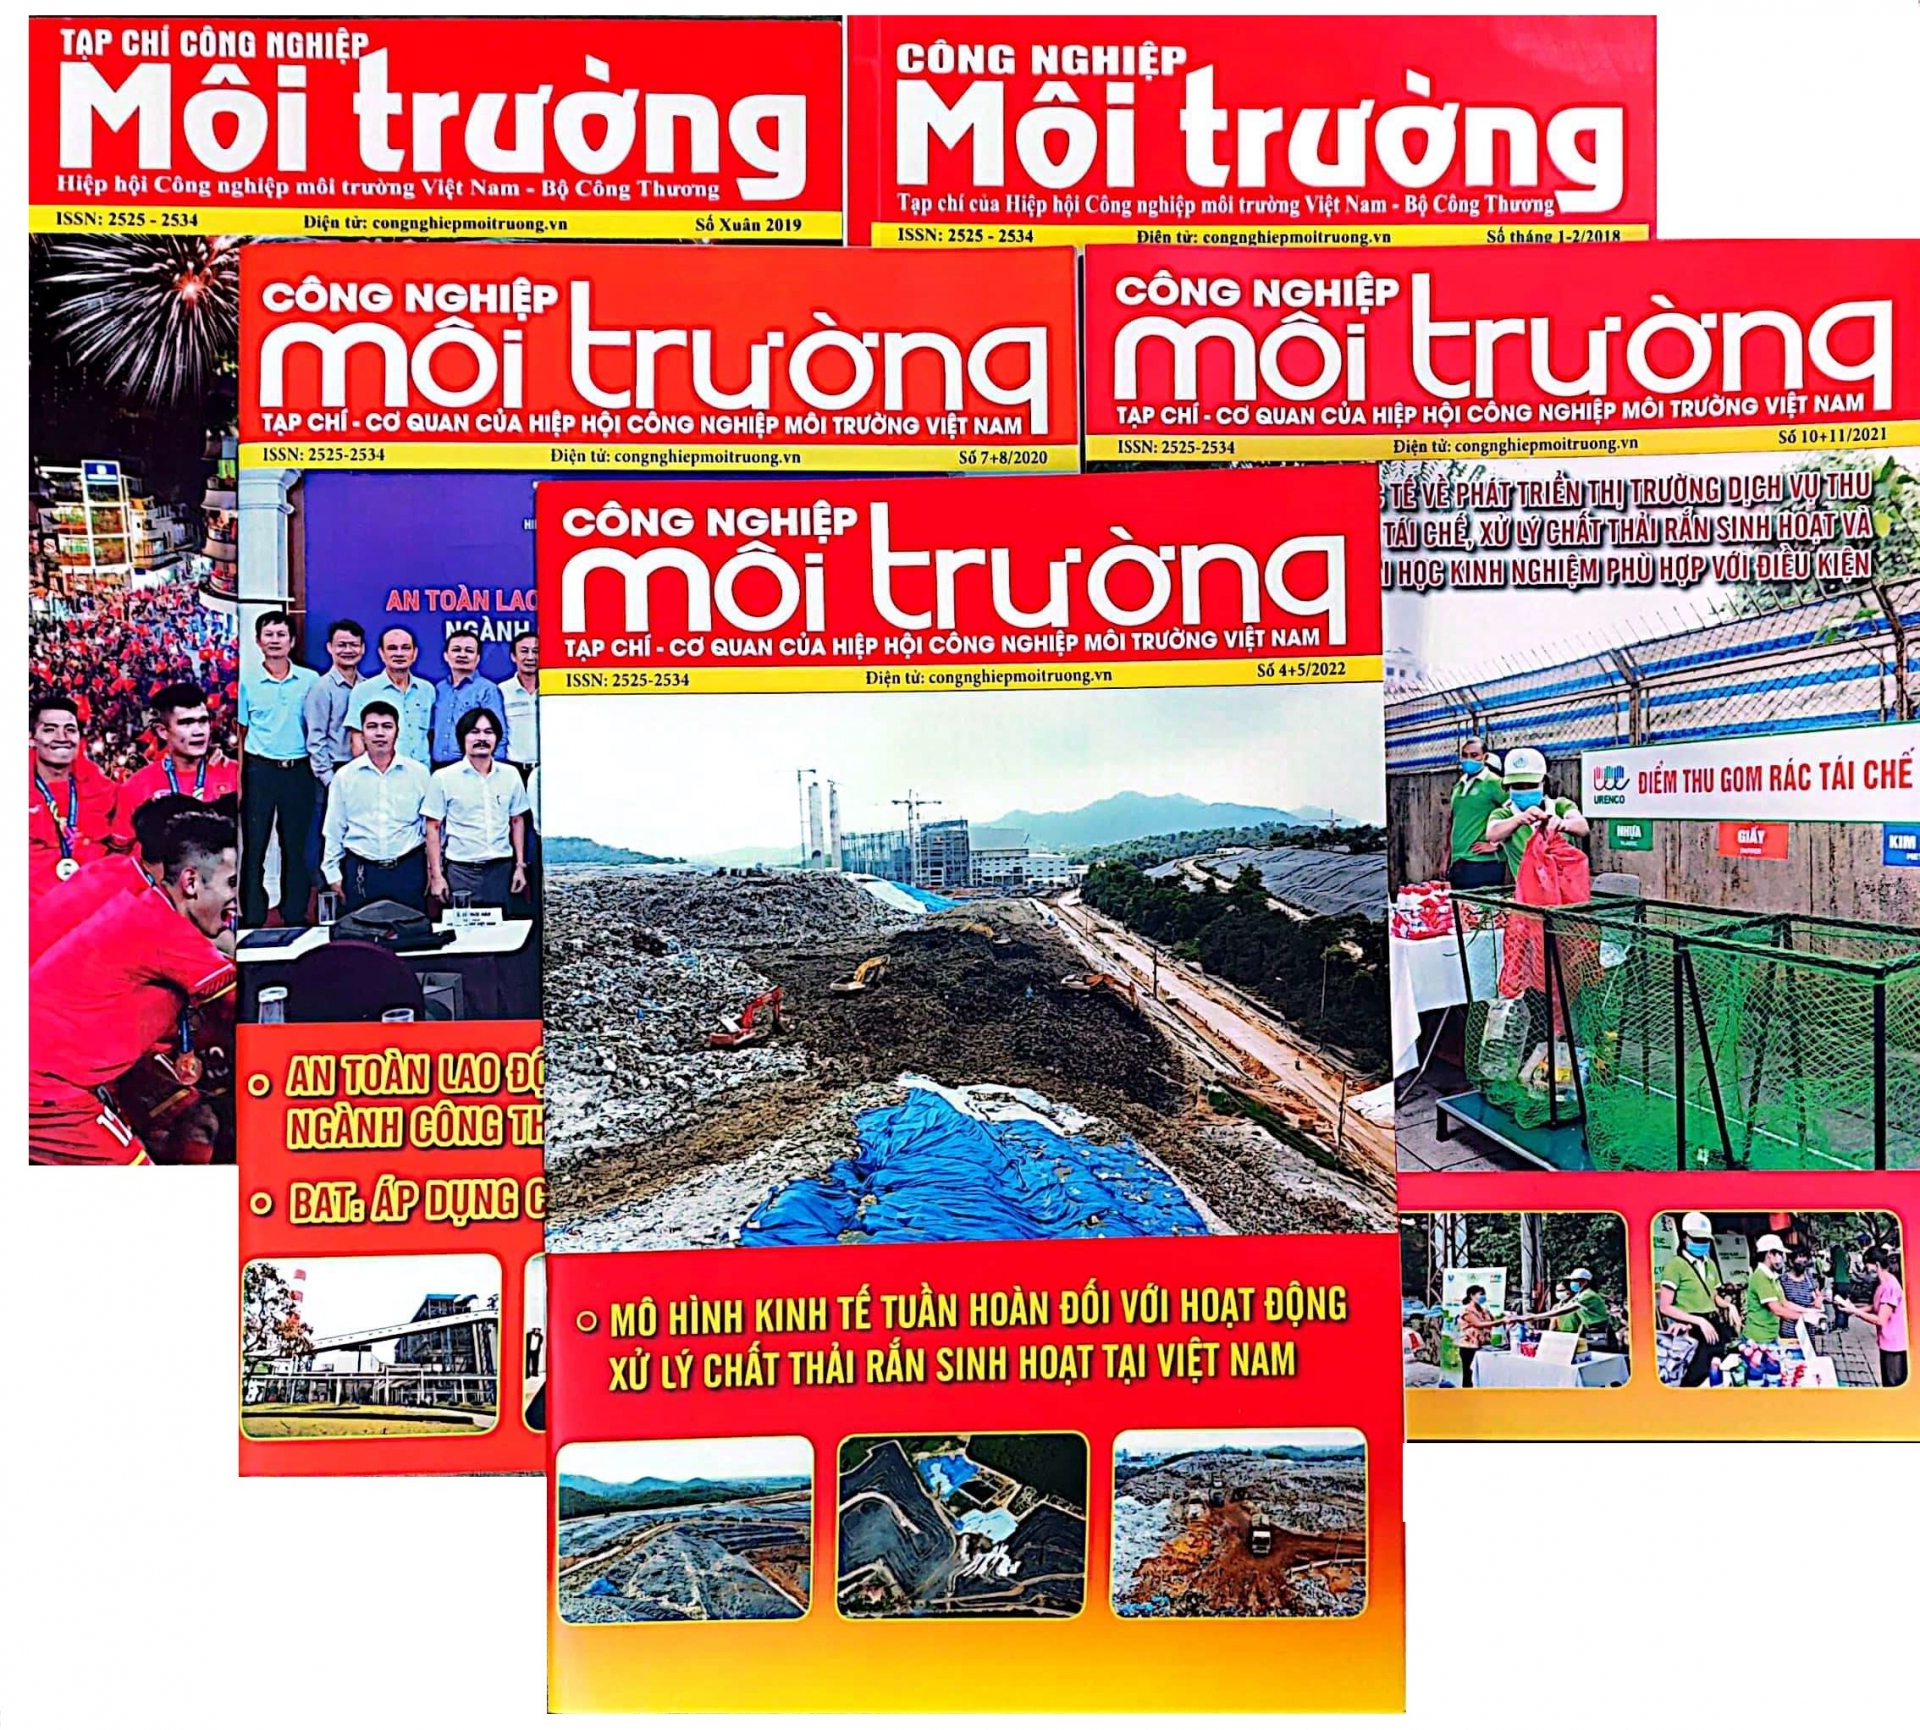 Tạp chí Công nghiệp môi trường tập trung mọi nguồn lực hướng đến thúc đẩy phát triển ngành Công nghiệp môi trường Việt Nam